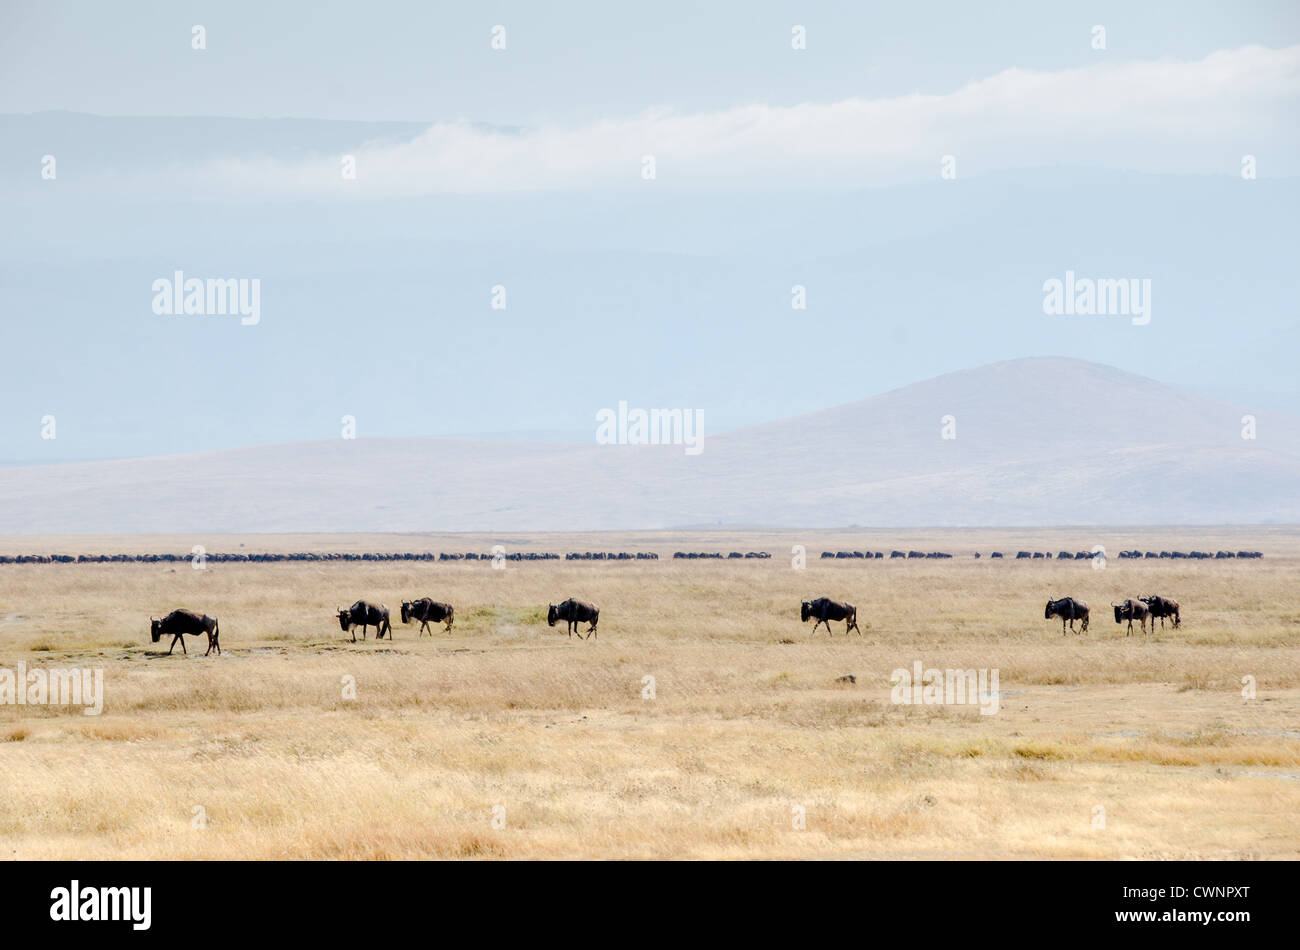 AREA PROTETTA DI NGORONGORO, Tanzania - Una manciata di wildebeest Walk in primo piano con una mandria molto più grande attraverso il centro della cornice sullo sfondo del Cratere di Ngorongoro nella zona protetta di Ngorongoro, parte del circuito settentrionale della Tanzania di parchi nazionali e riserve naturali. Il cratere di Ngorongoro, patrimonio dell'umanità dell'UNESCO, è una vasta caldera vulcanica nel nord della Tanzania. Creato 2-3 milioni di anni fa, misura circa 20 chilometri di diametro ed è sede di diversi animali selvatici, tra cui i "Big Five" animali da caccia. La zona protetta di Ngorongoro, abitata dal Maa Foto Stock